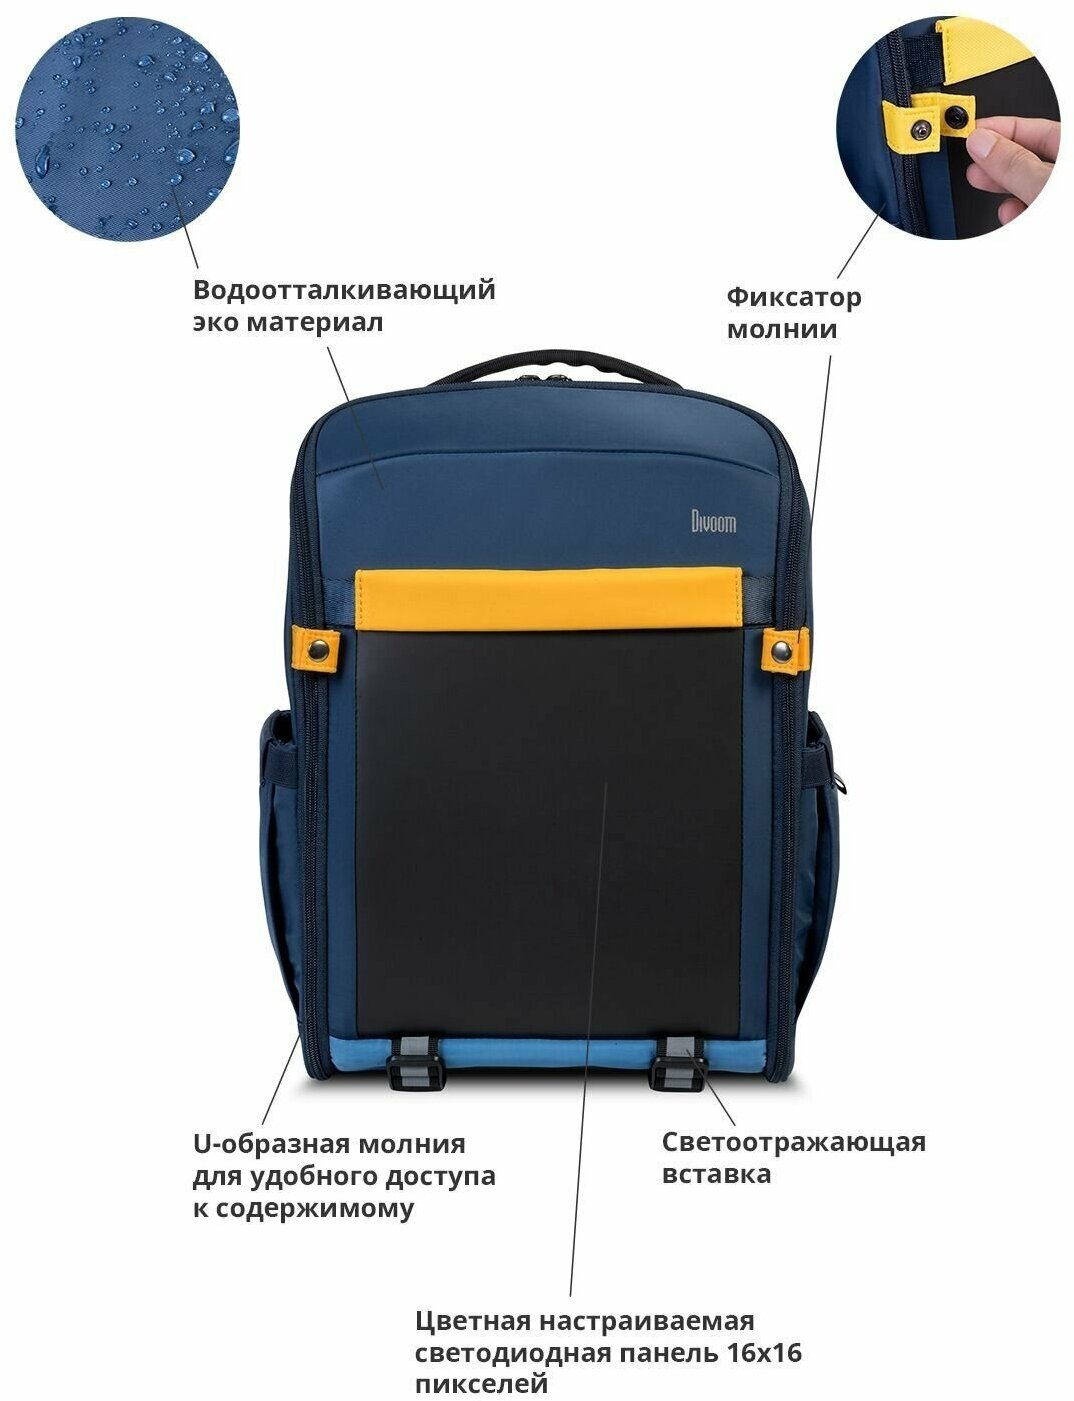 Рюкзак с пиксельным LED дисплеем Divoom Backpack-S - Синий